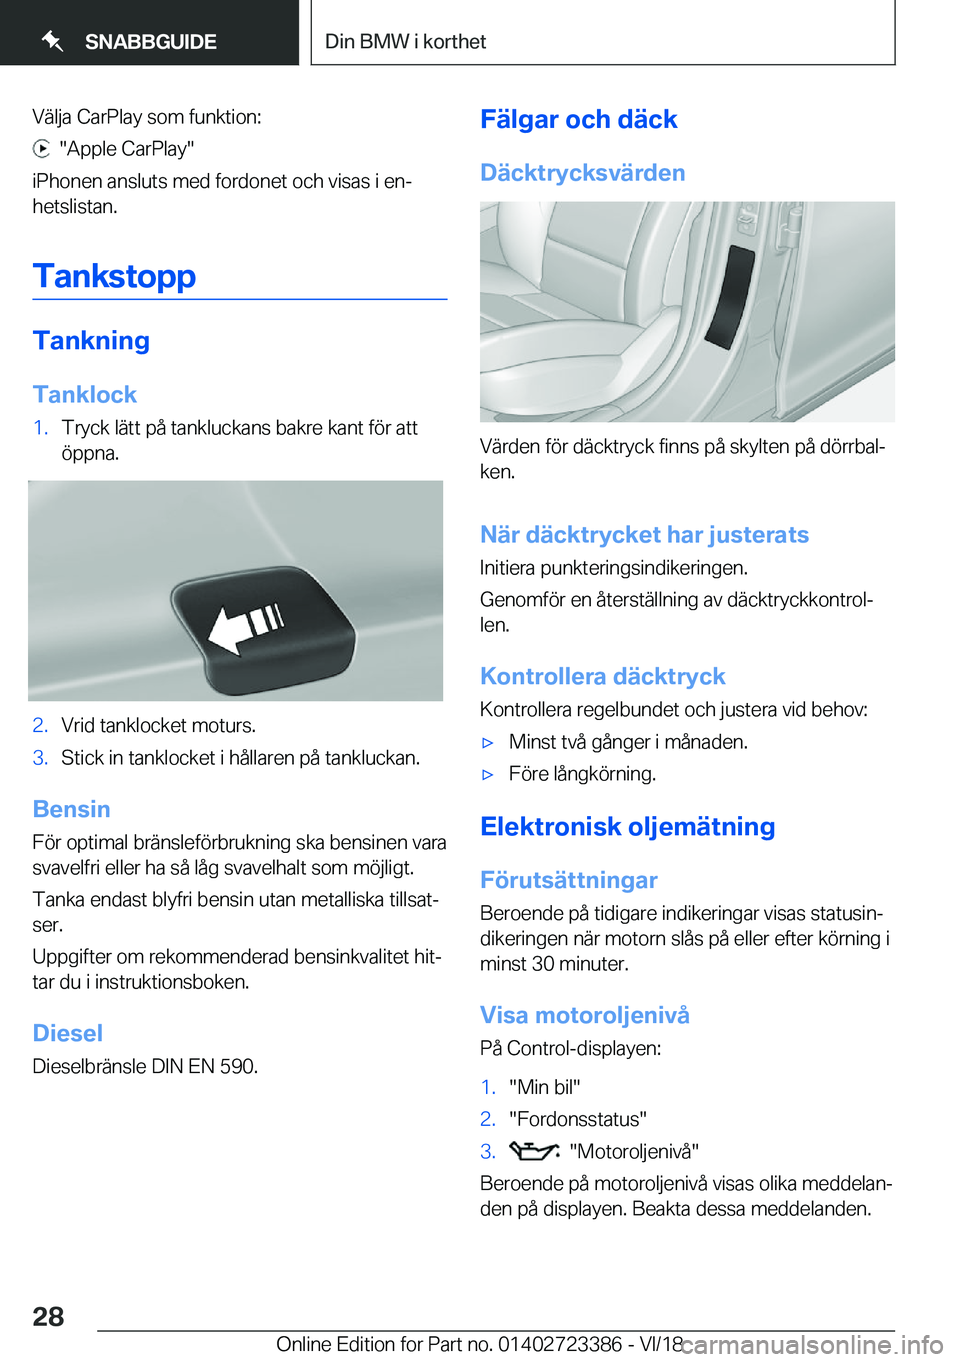 BMW 2 SERIES COUPE 2019  InstruktionsbÖcker (in Swedish) �V�ä�l�j�a��C�a�r�P�l�a�y��s�o�m��f�u�n�k�t�i�o�n�:
����A�p�p�l�e��C�a�r�P�l�a�y�
�i�P�h�o�n�e�n��a�n�s�l�u�t�s��m�e�d��f�o�r�d�o�n�e�t��o�c�h��v�i�s�a�s��i��e�nj �h�e�t�s�l�i�s�t�a�n